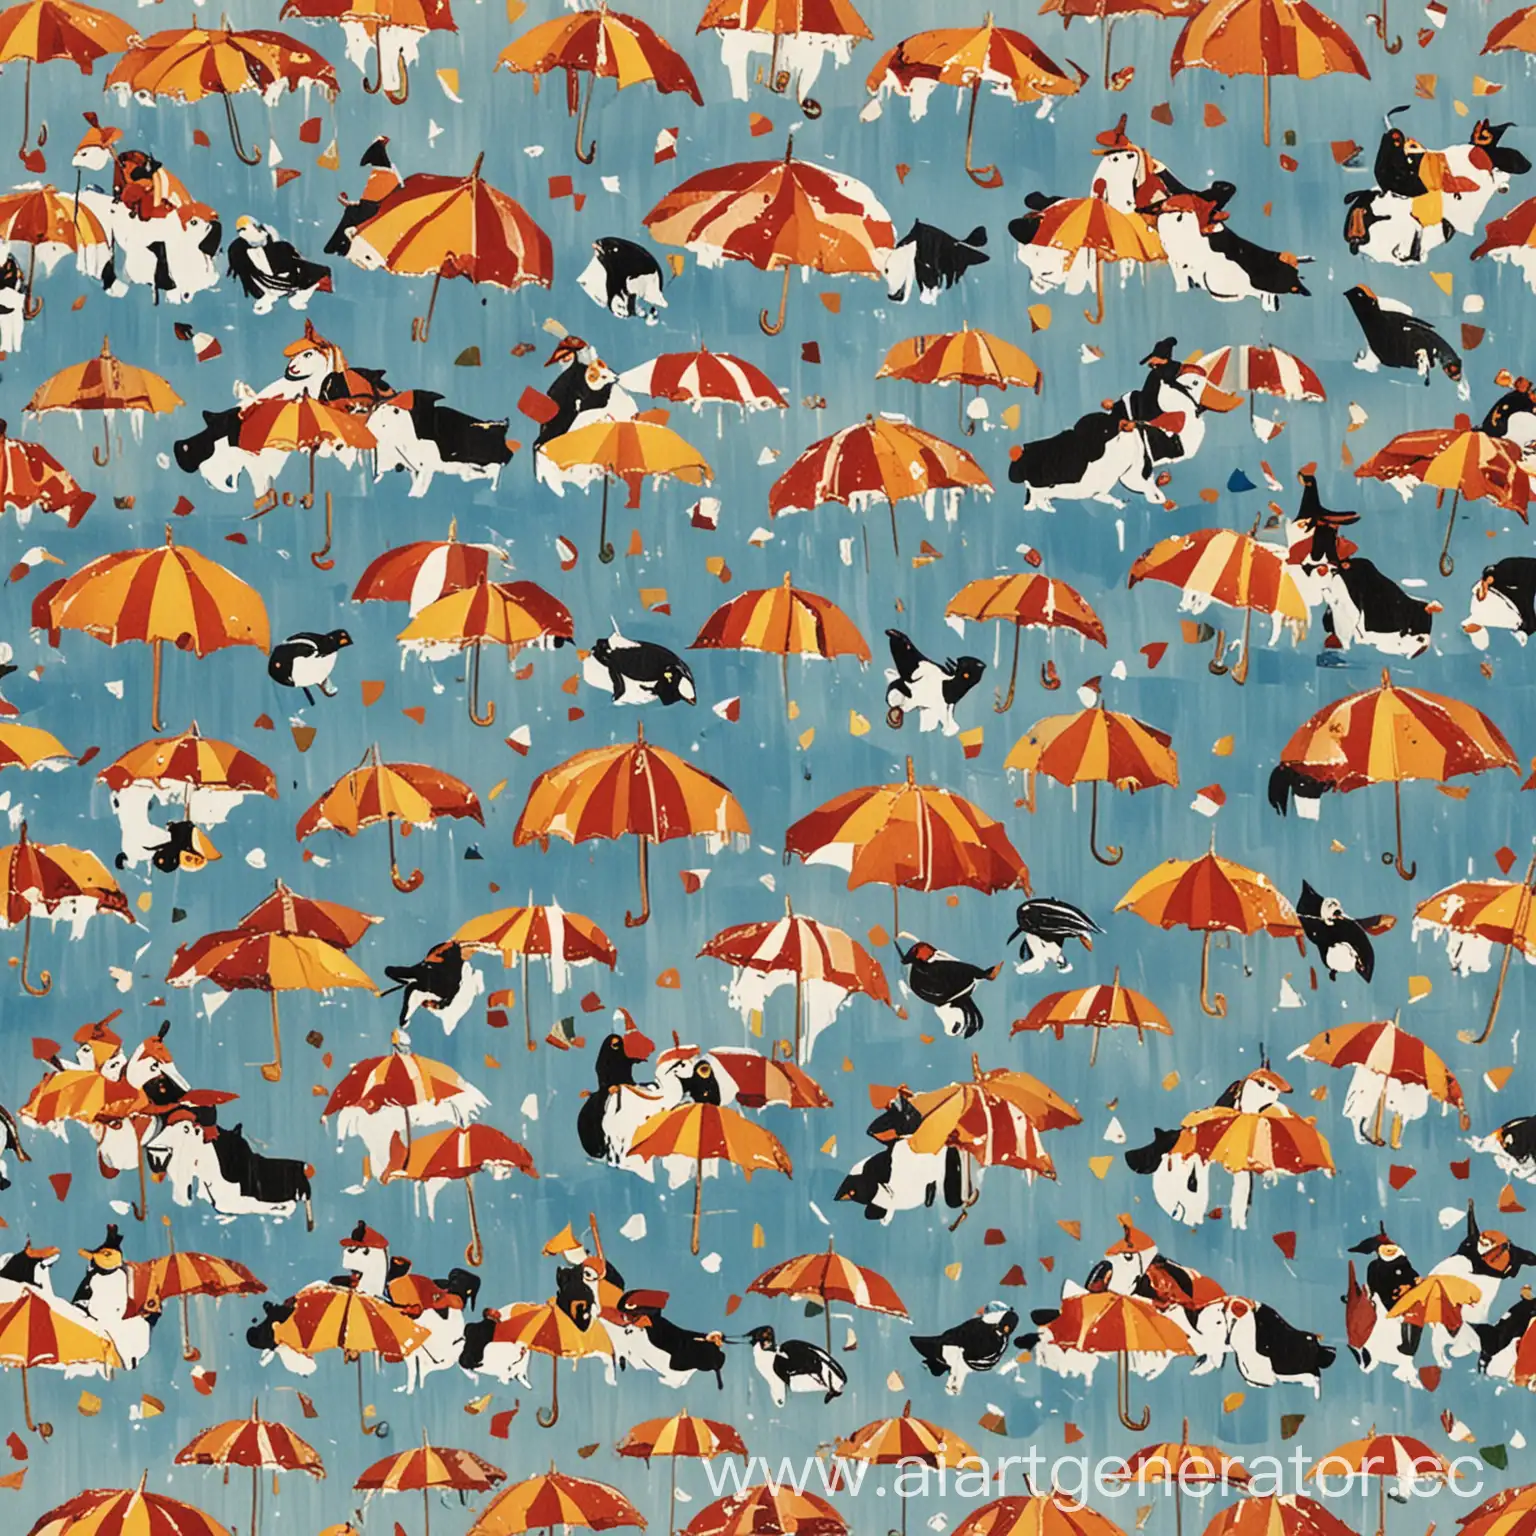 Флаг состоит из разноцветных диагональных полос, изображающих летающих коров и пингвинов с зонтиками.